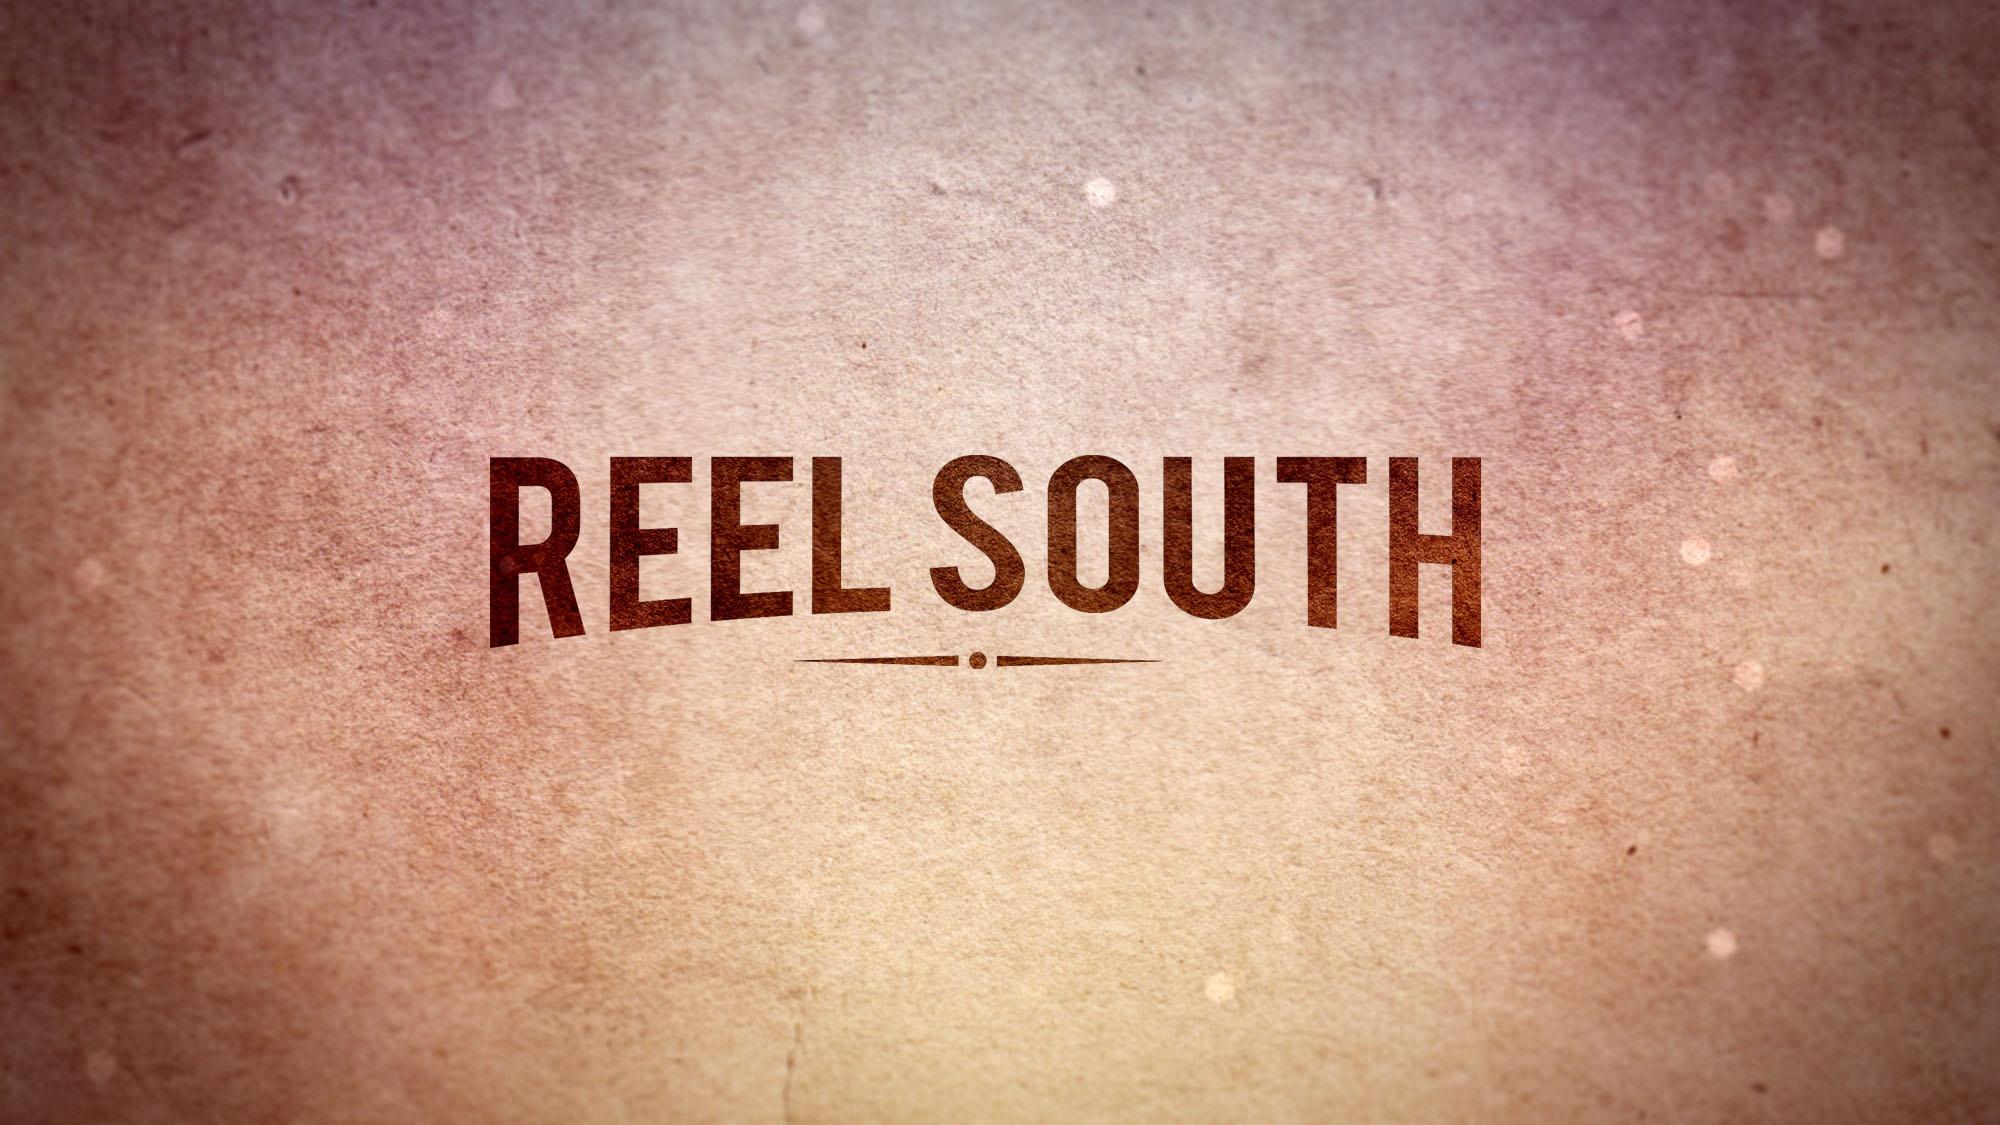 Reel South